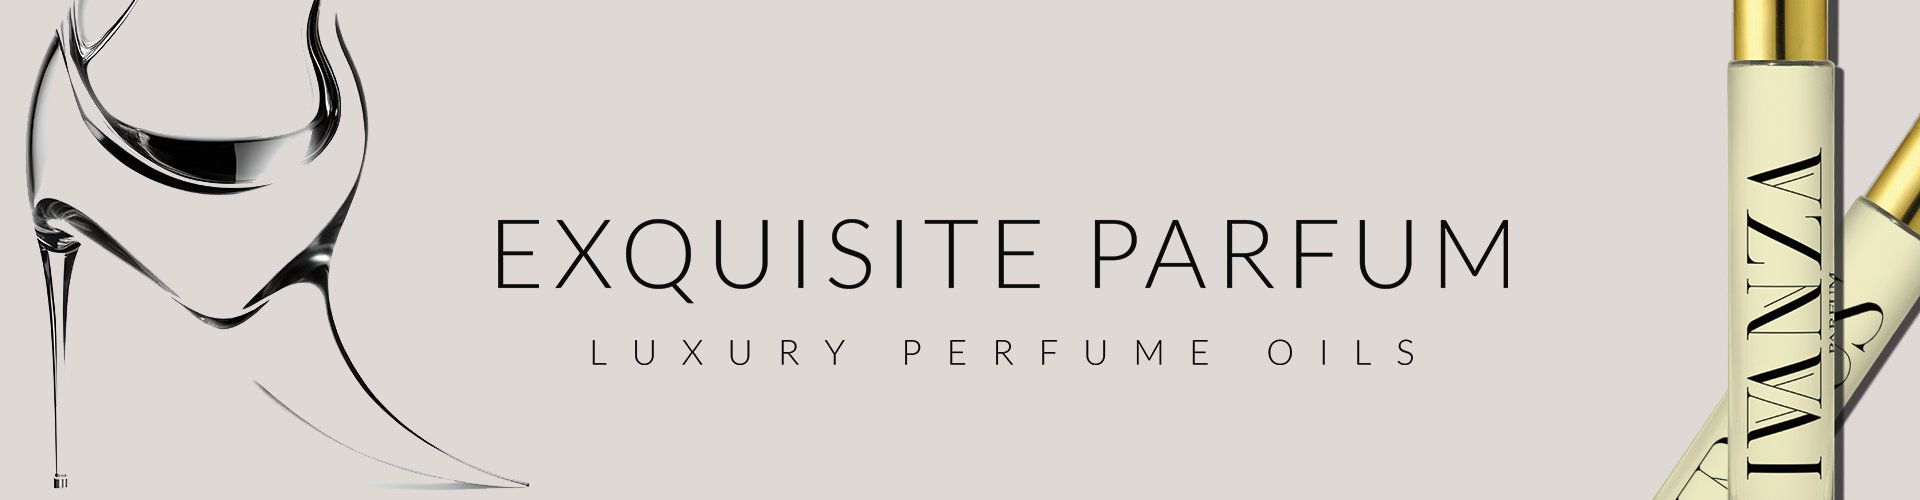 Pure Parfum Oils | Luxury Perfume Oils at Exquisite Parfum